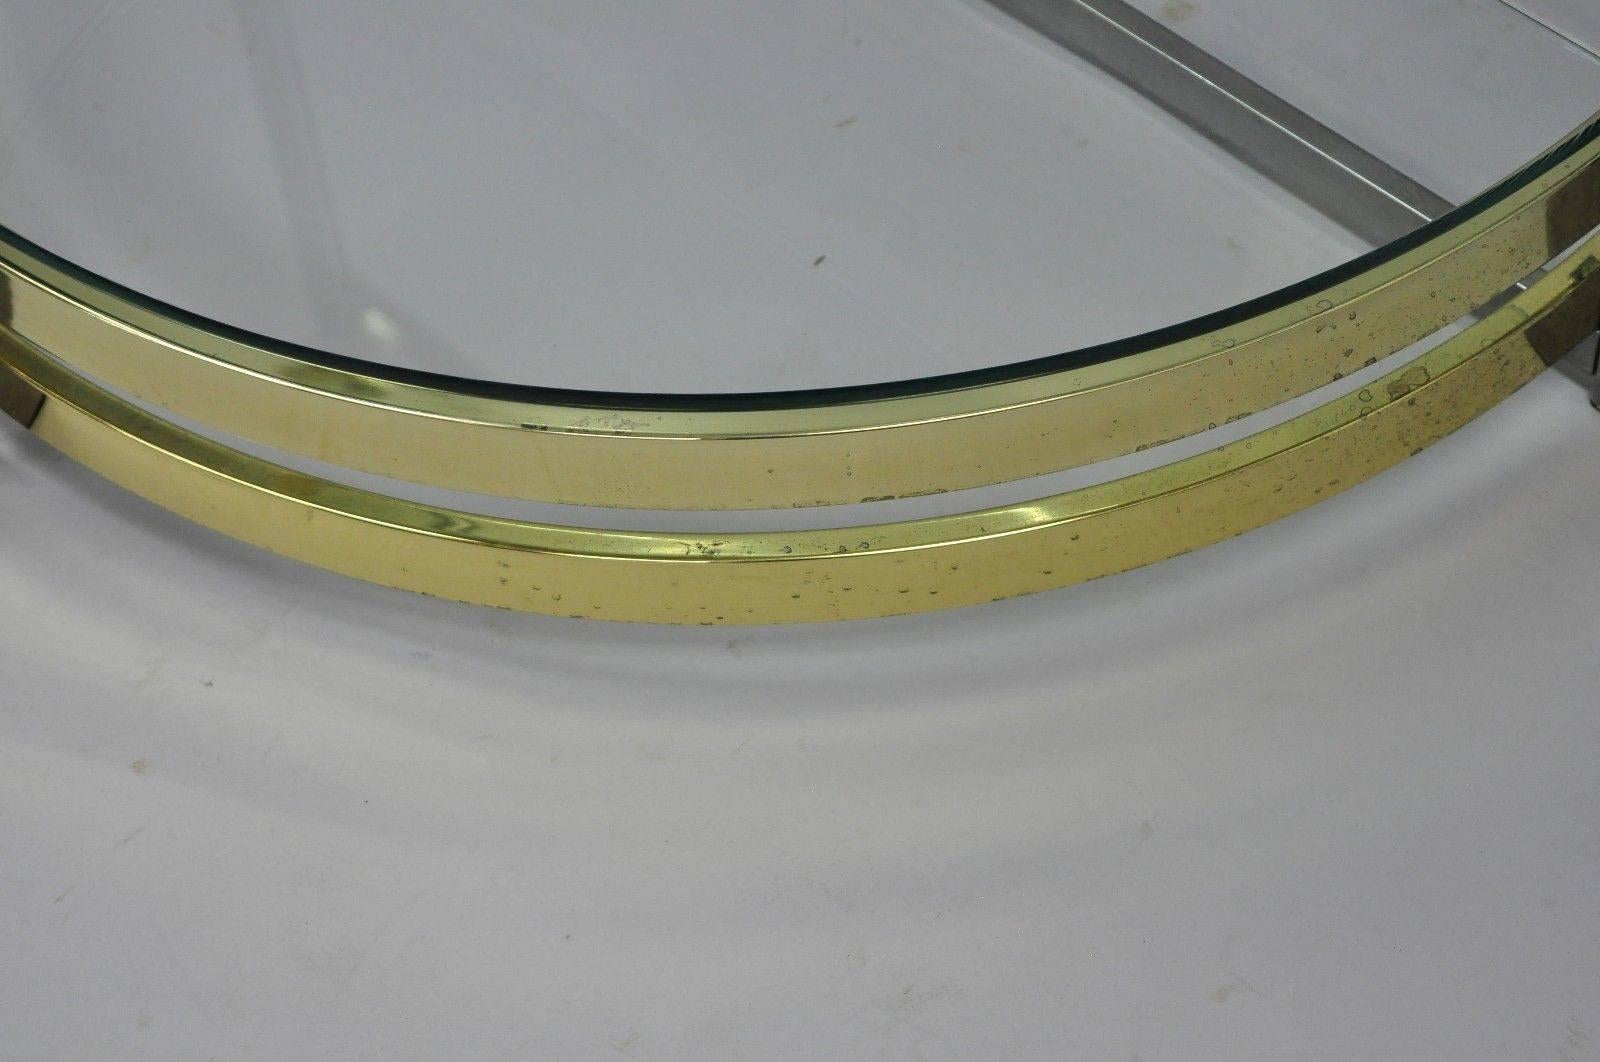 Chrome Brass Glass Demilune Etagere Half Round Mid-Century Modern Shelf 2